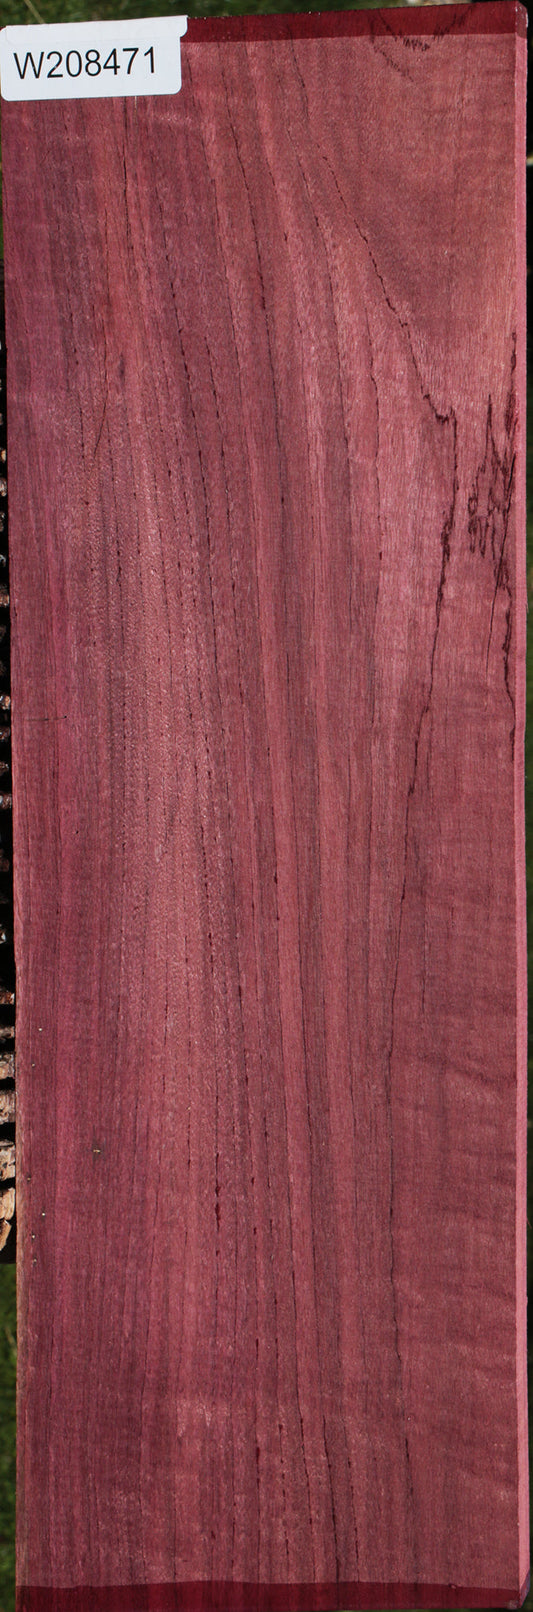 Figured Purpleheart Lumber